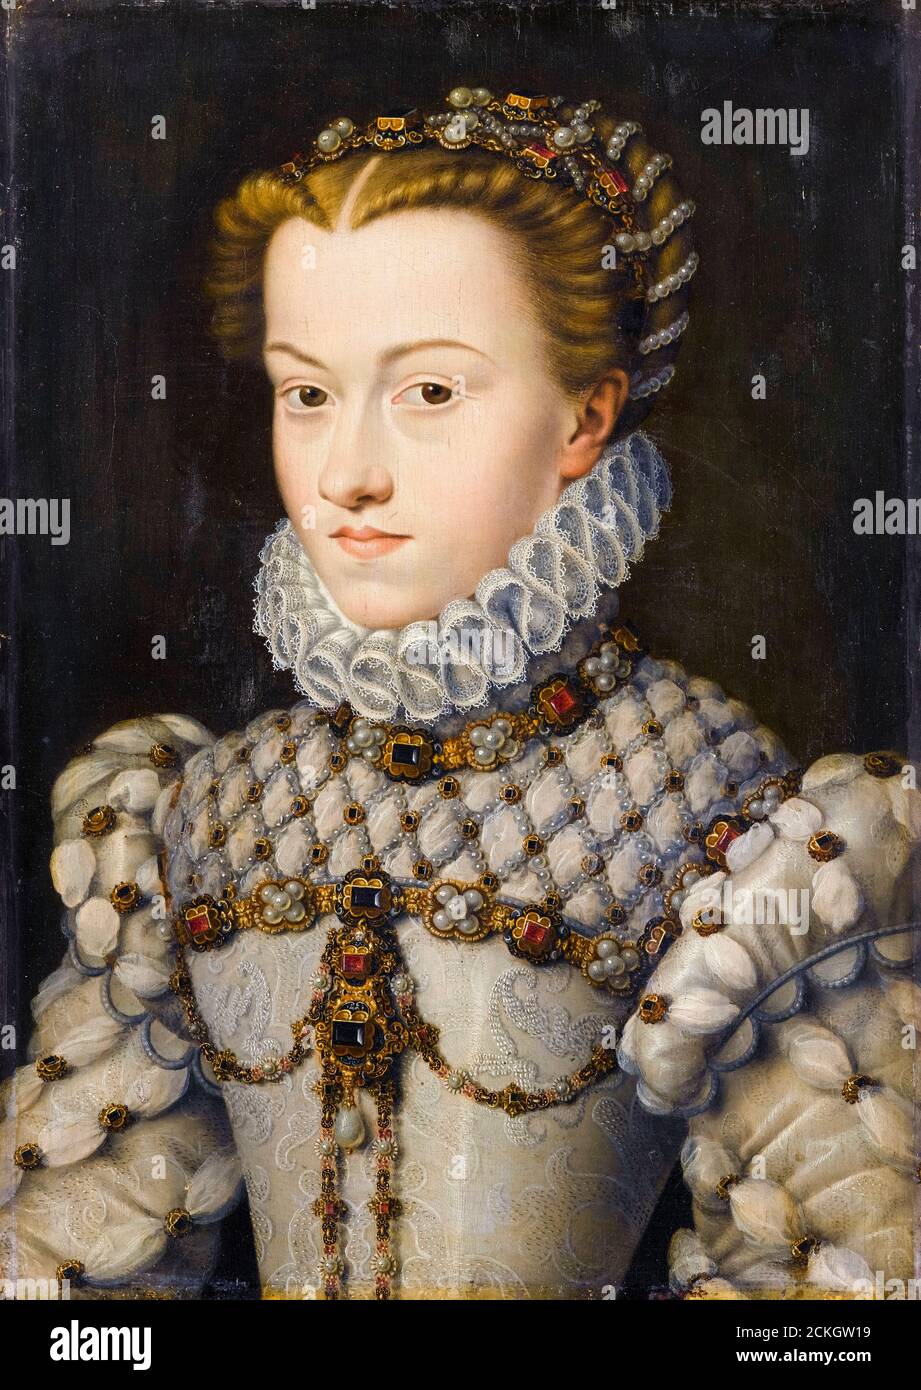 Elisabeth of Austria (1554-1592), Queen of France, portrait painting by François Clouet, circa 1571 Stock Photo